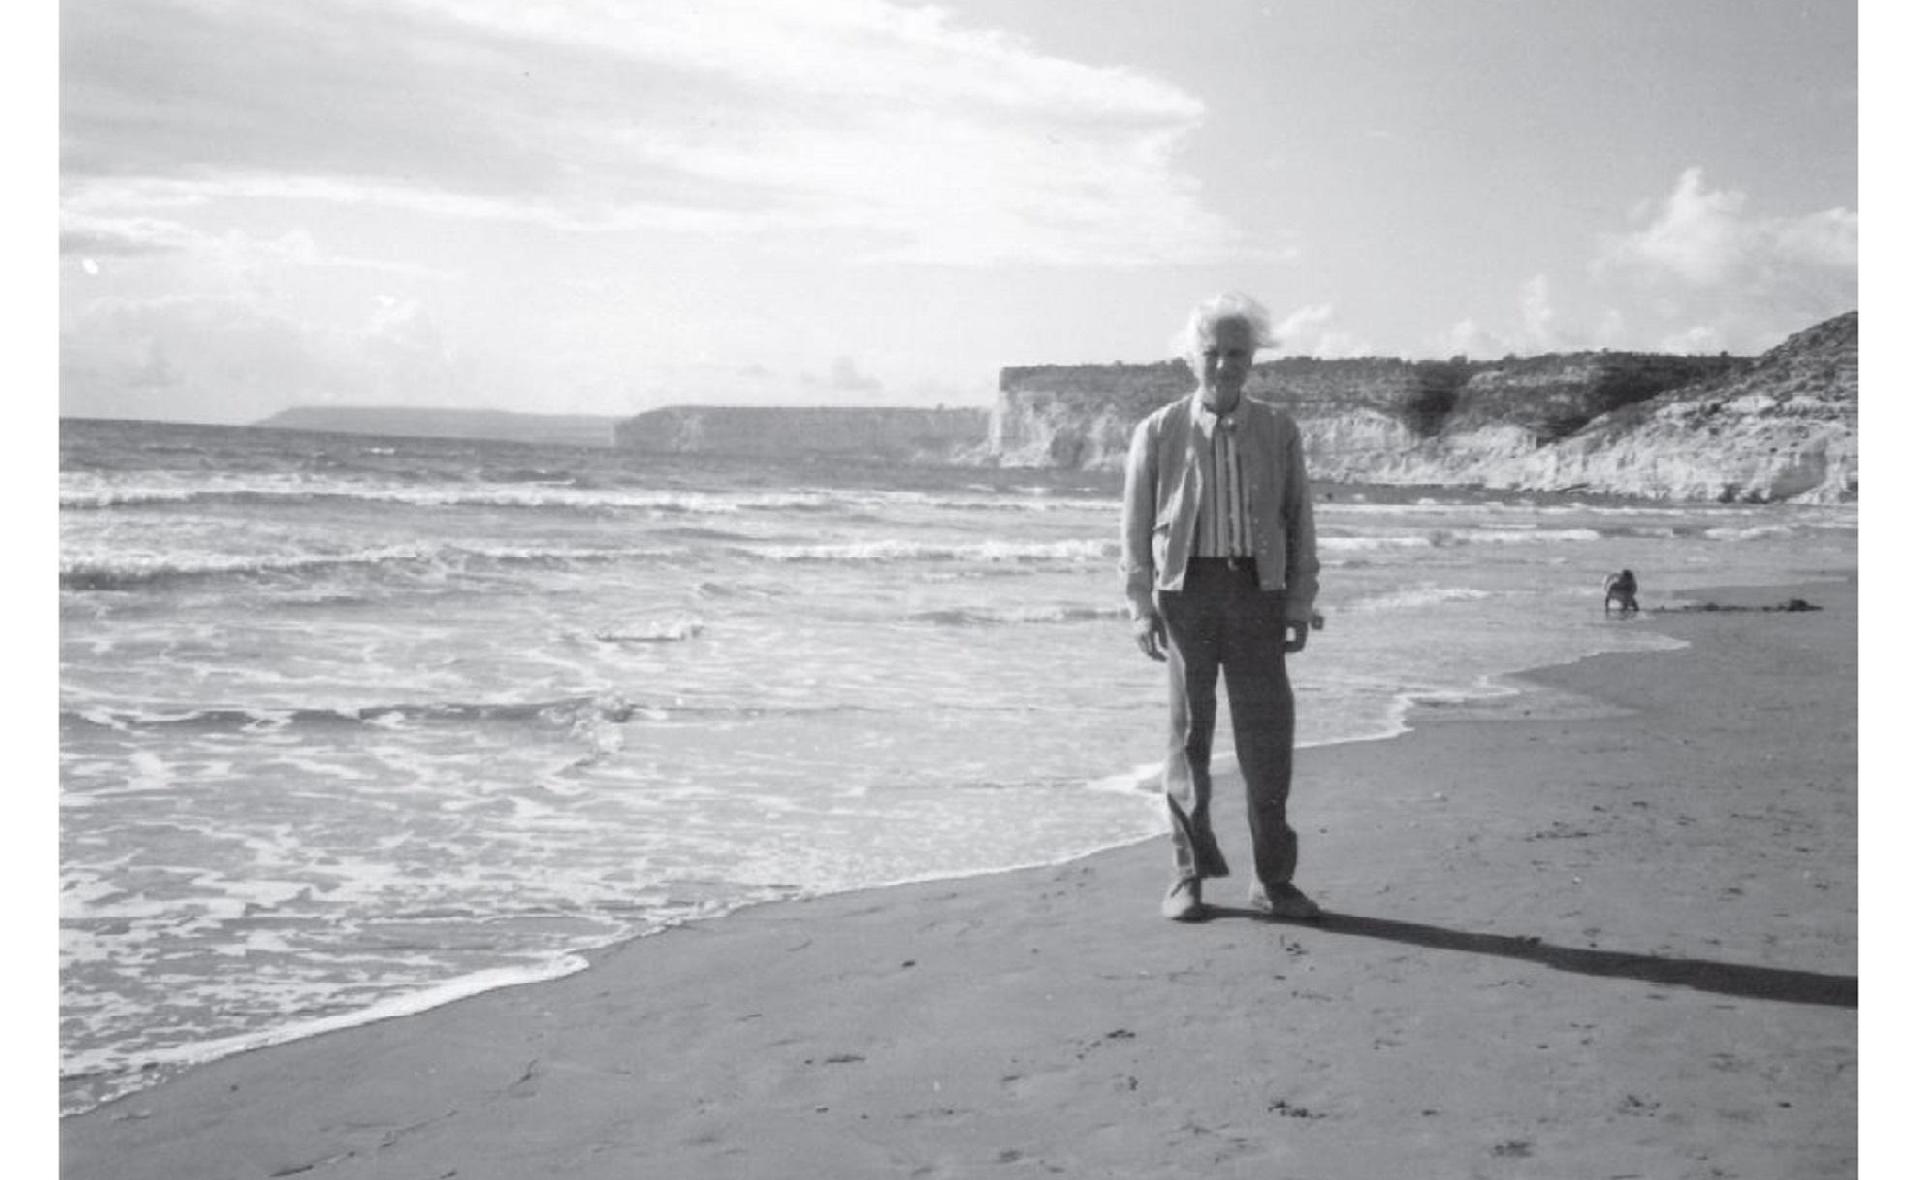 Hazai György a ciprusi tengerparton (Hazai György "Ellenszélben szélárnyékban" c. memoárjából)